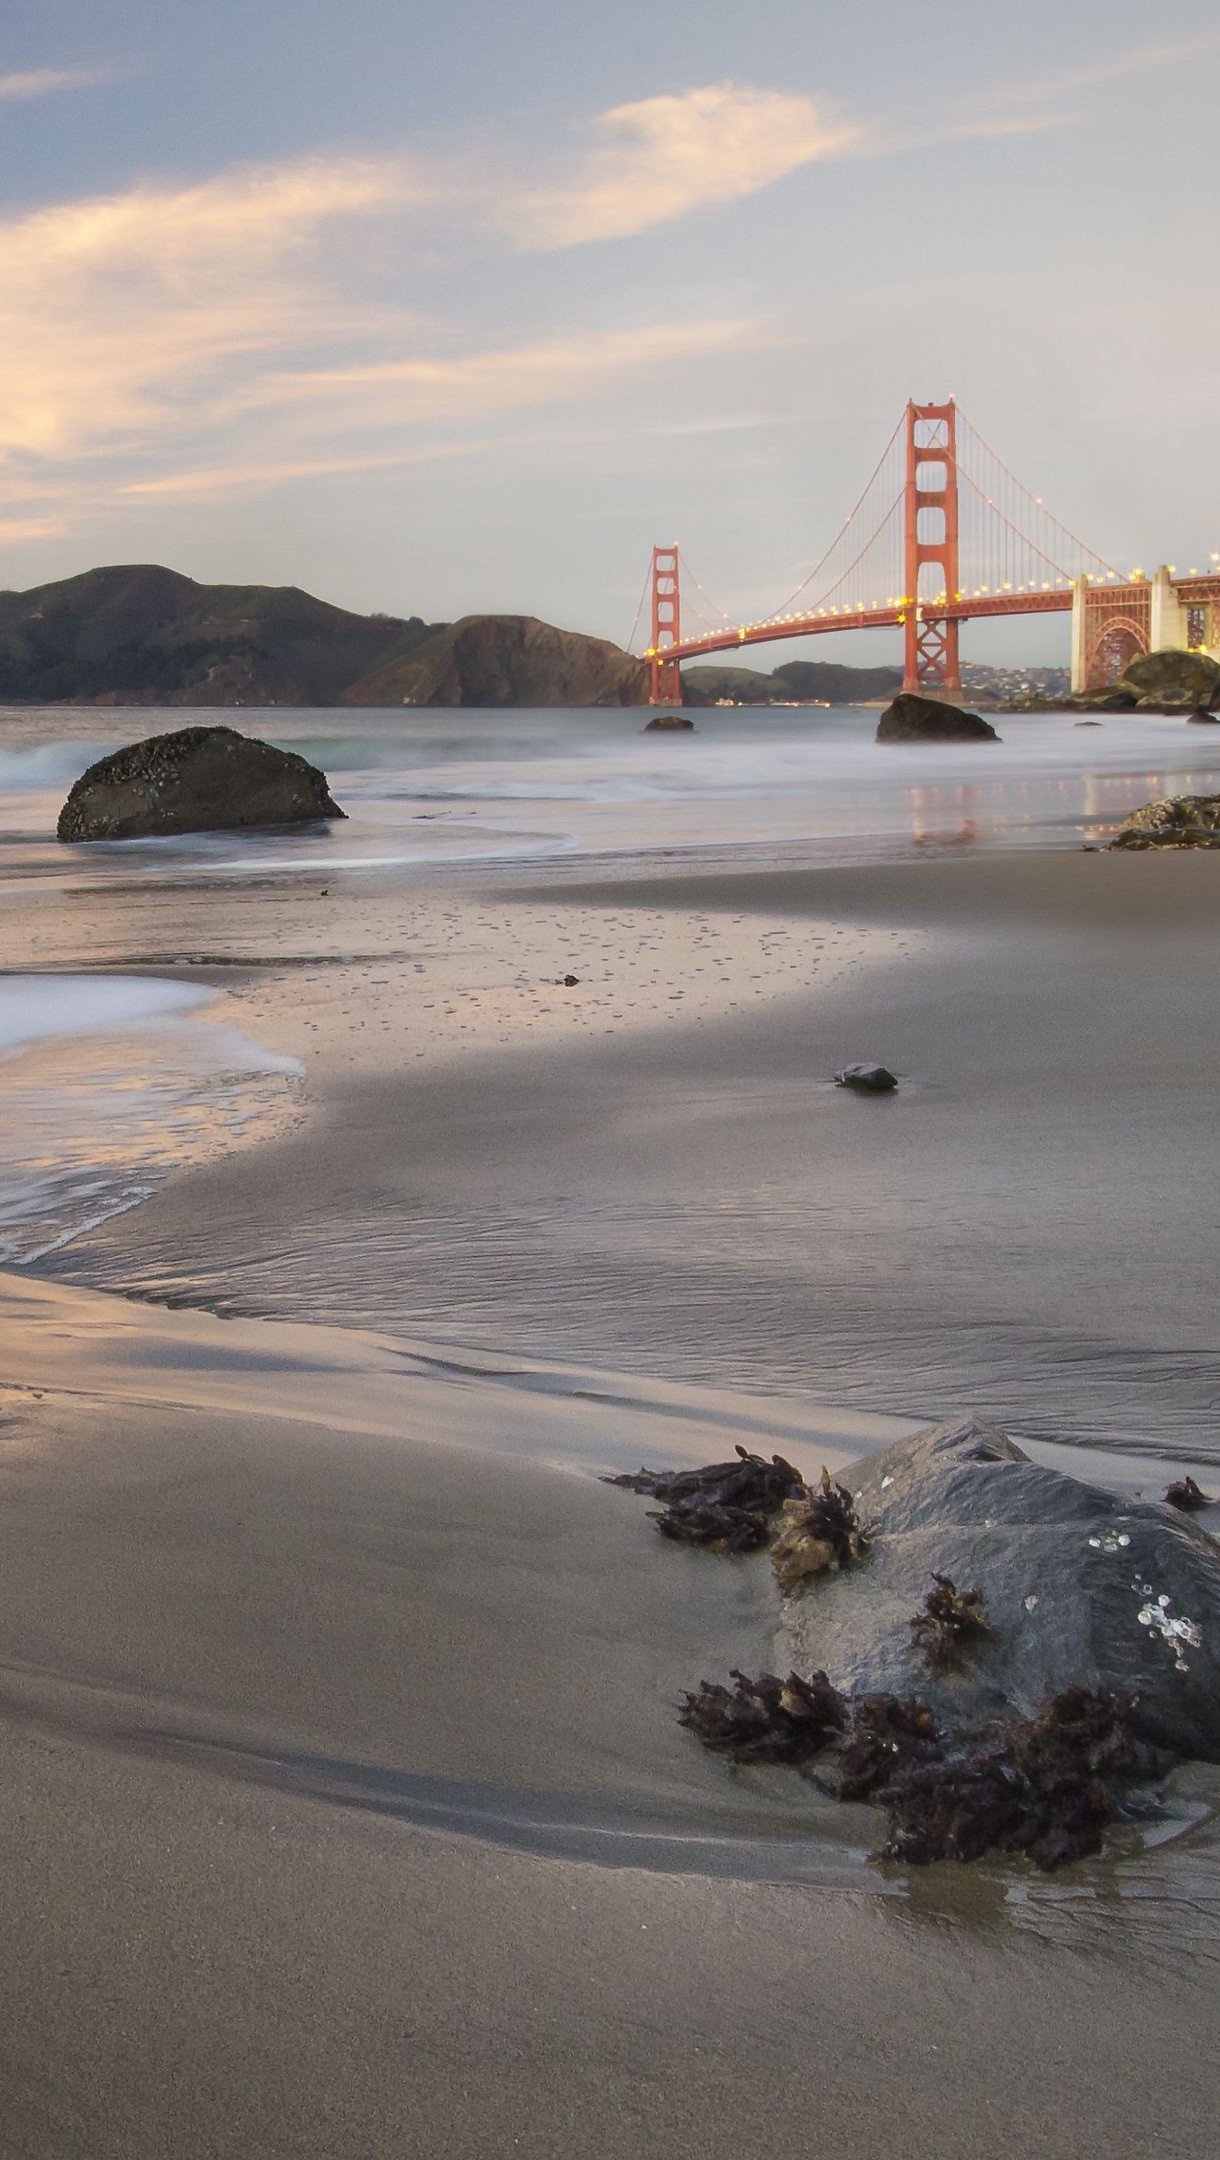 Fondos de pantalla Costa en San Francisco Vertical